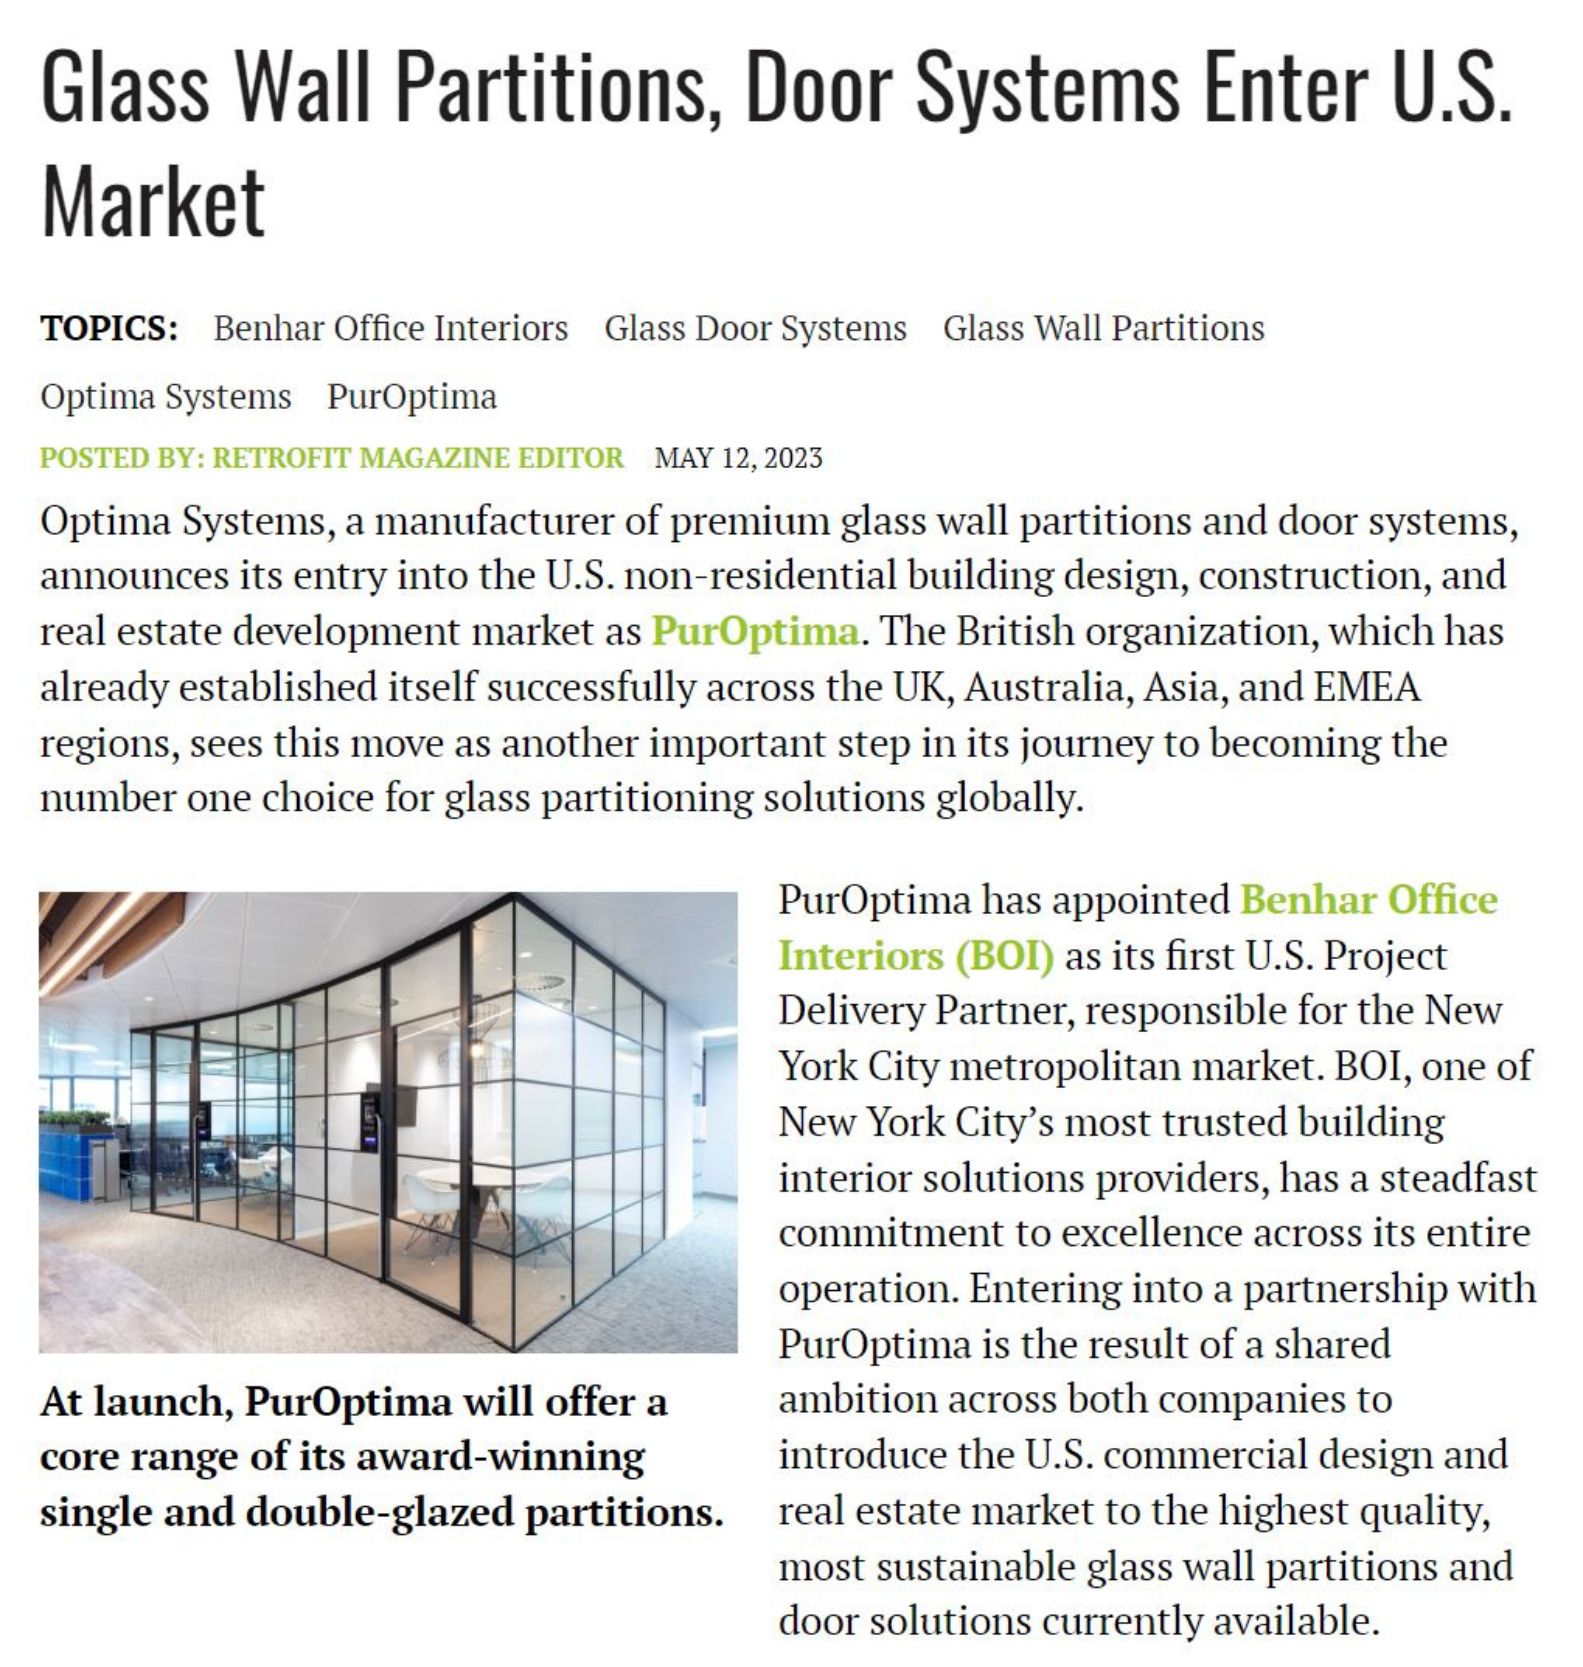 PurOptima Glass Walls, Retro Fit